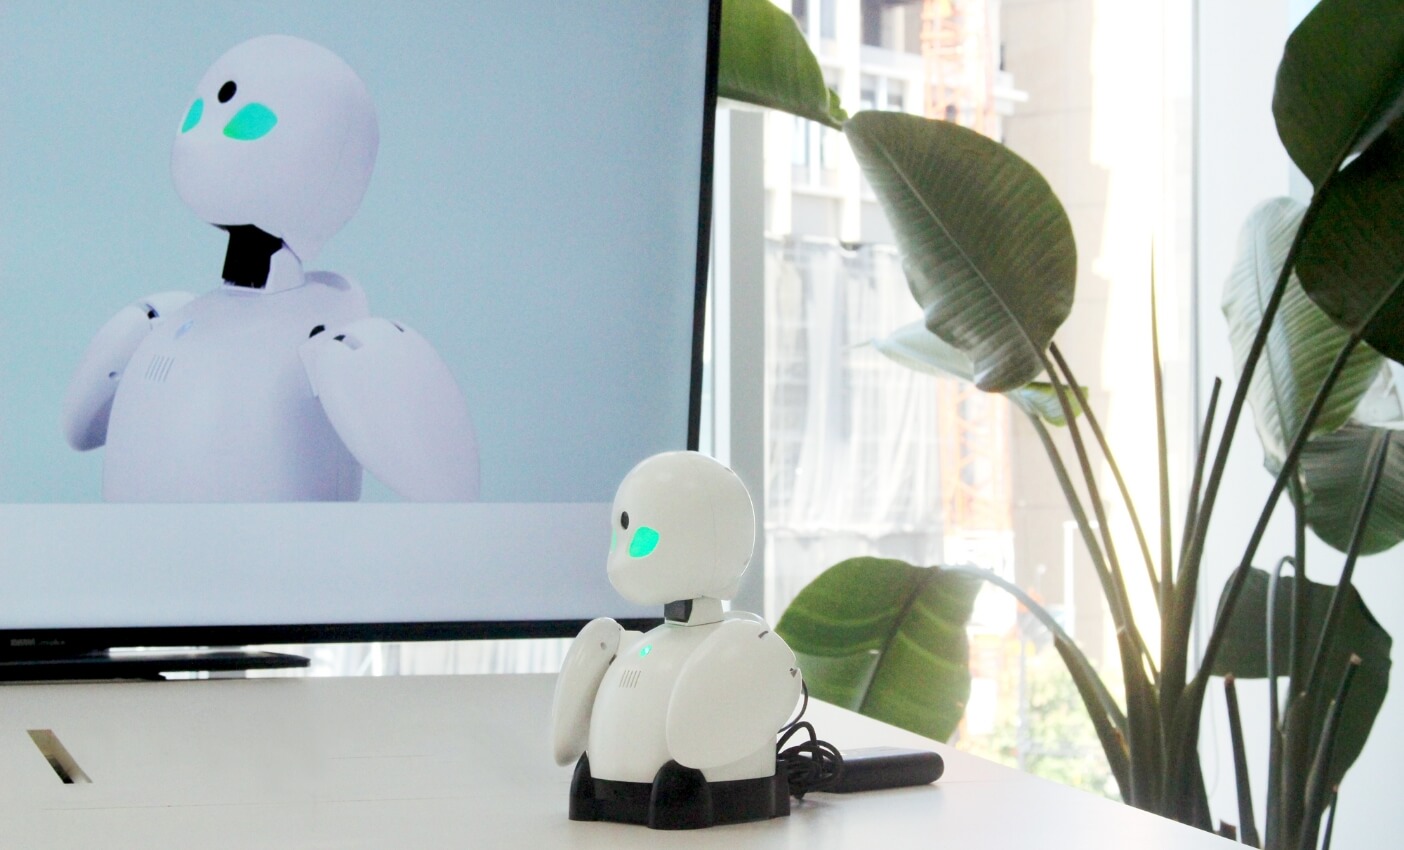 「孤独」という社会課題に人生をかけて分身ロボットOriHime(オリヒメ)を開発